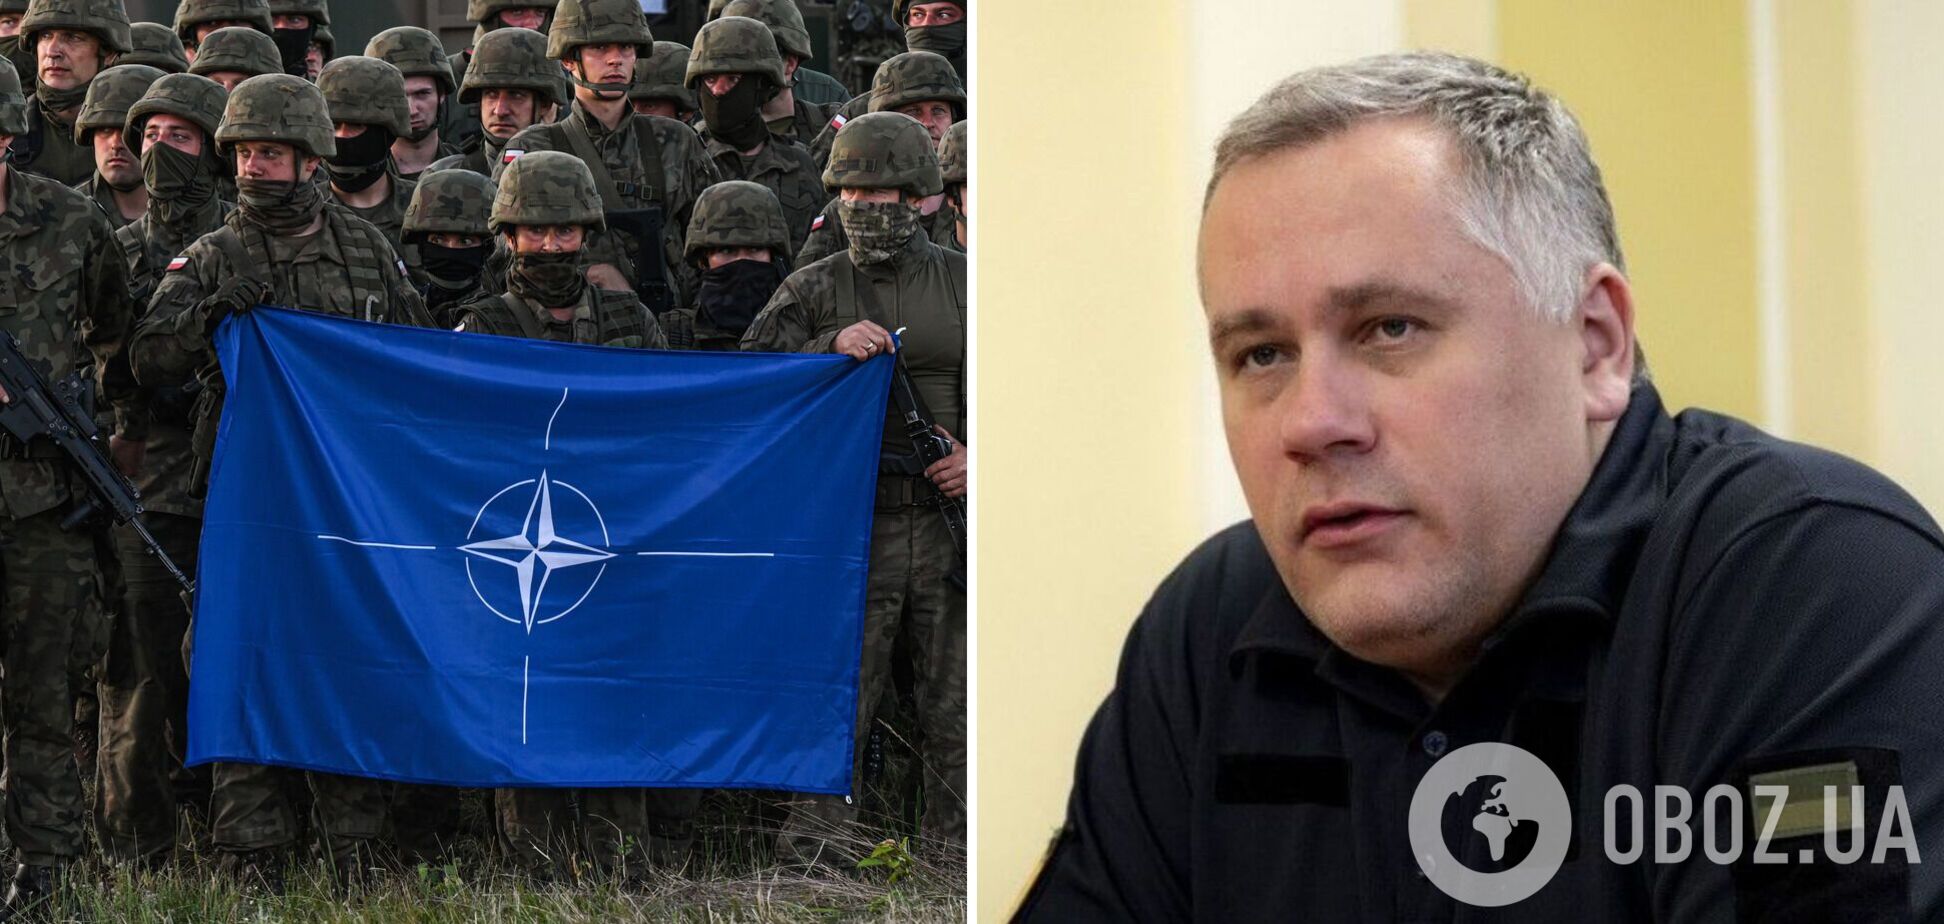 Україна не розглядає введення військ НАТО: у Зеленського пояснили причину